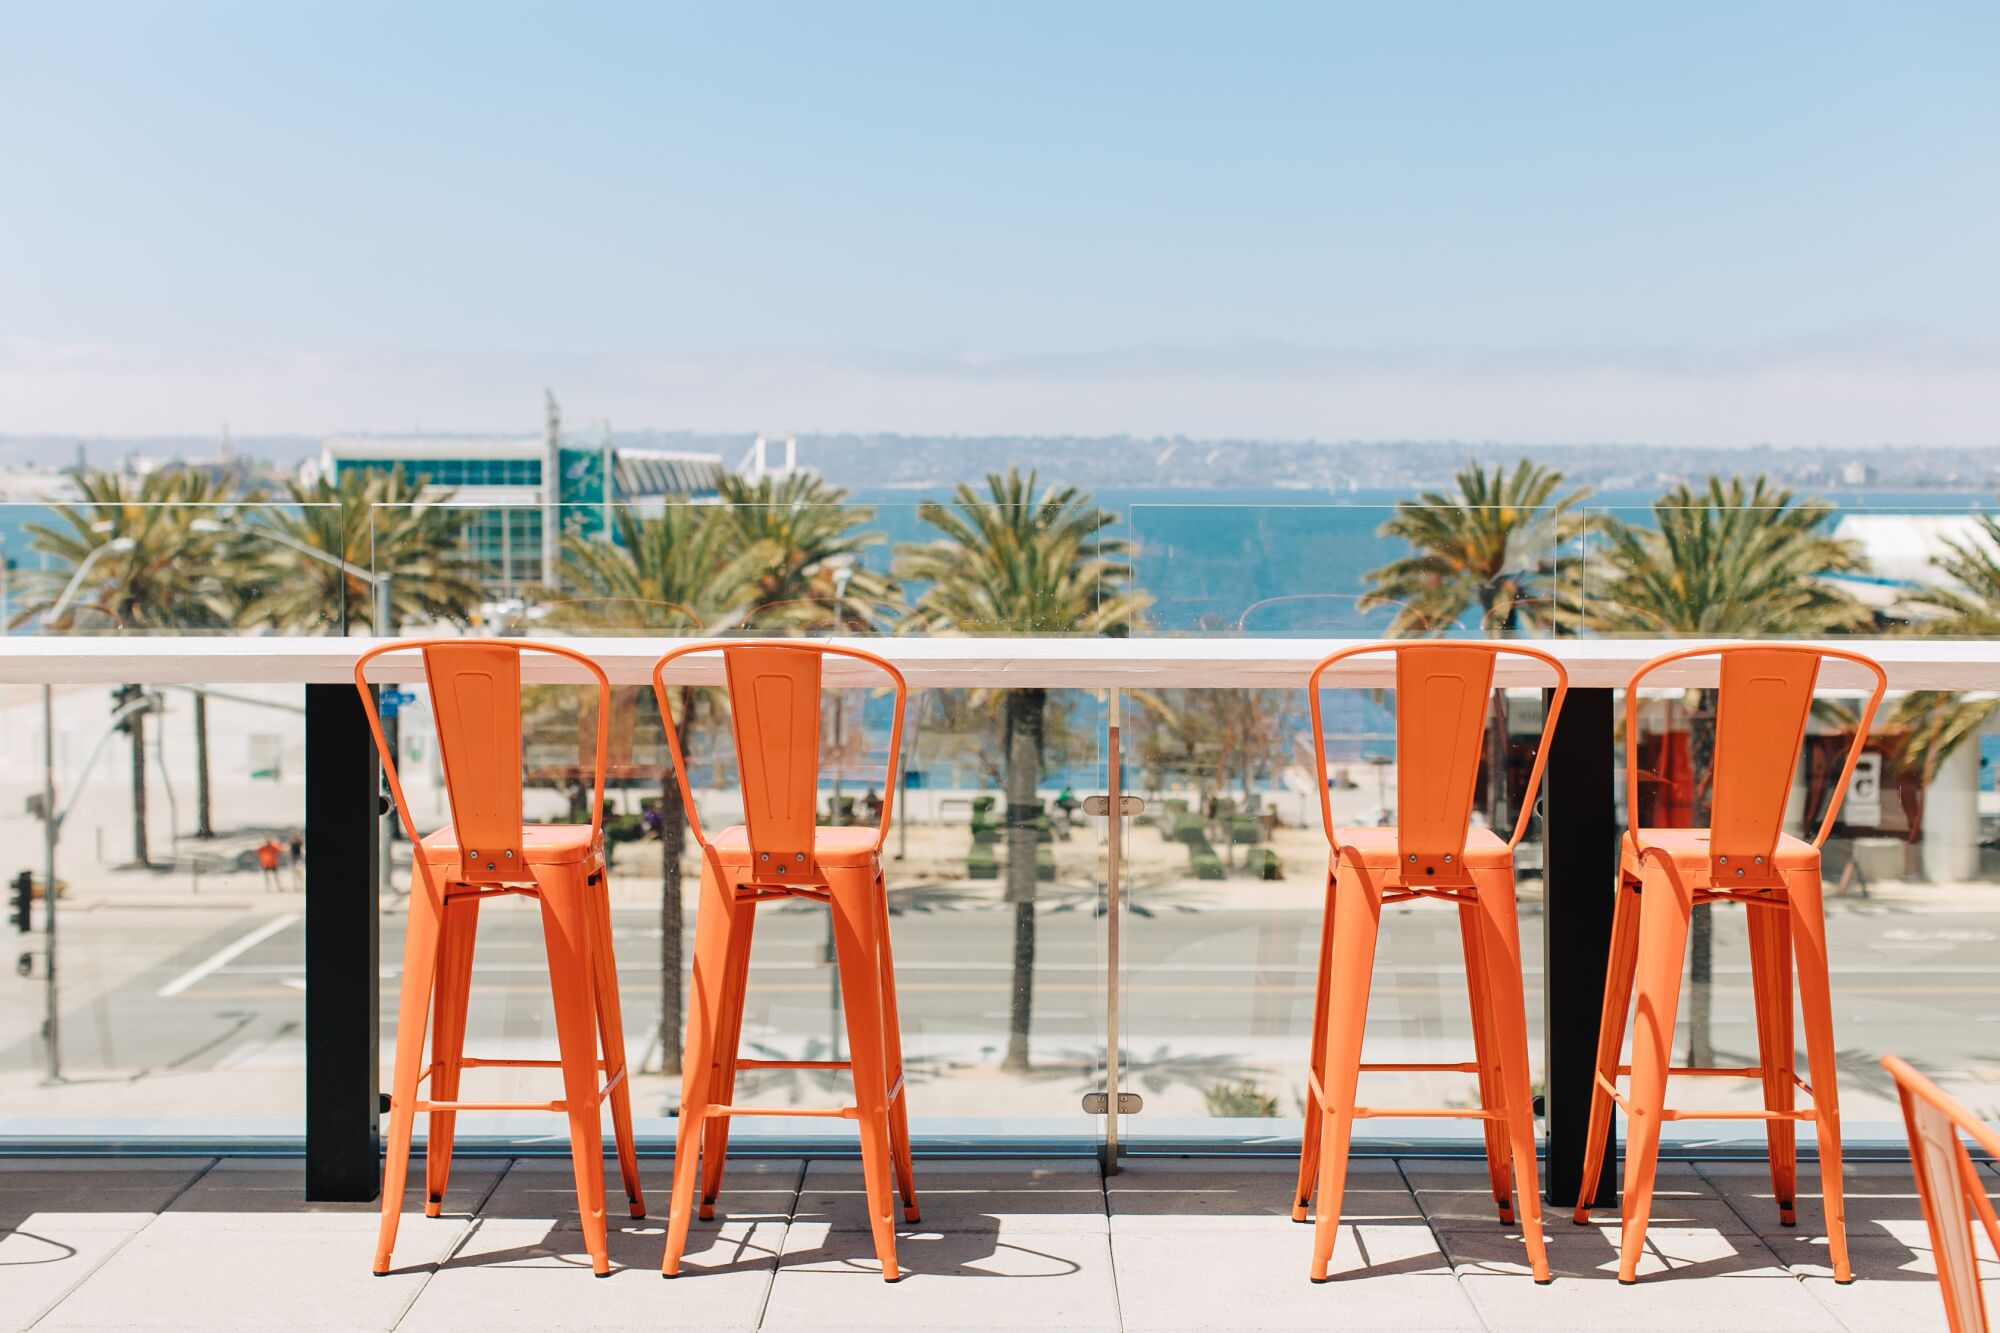 A bay-facing drinks bar at Garibaldi restaurant at the InterContinental Hotel San Diego.